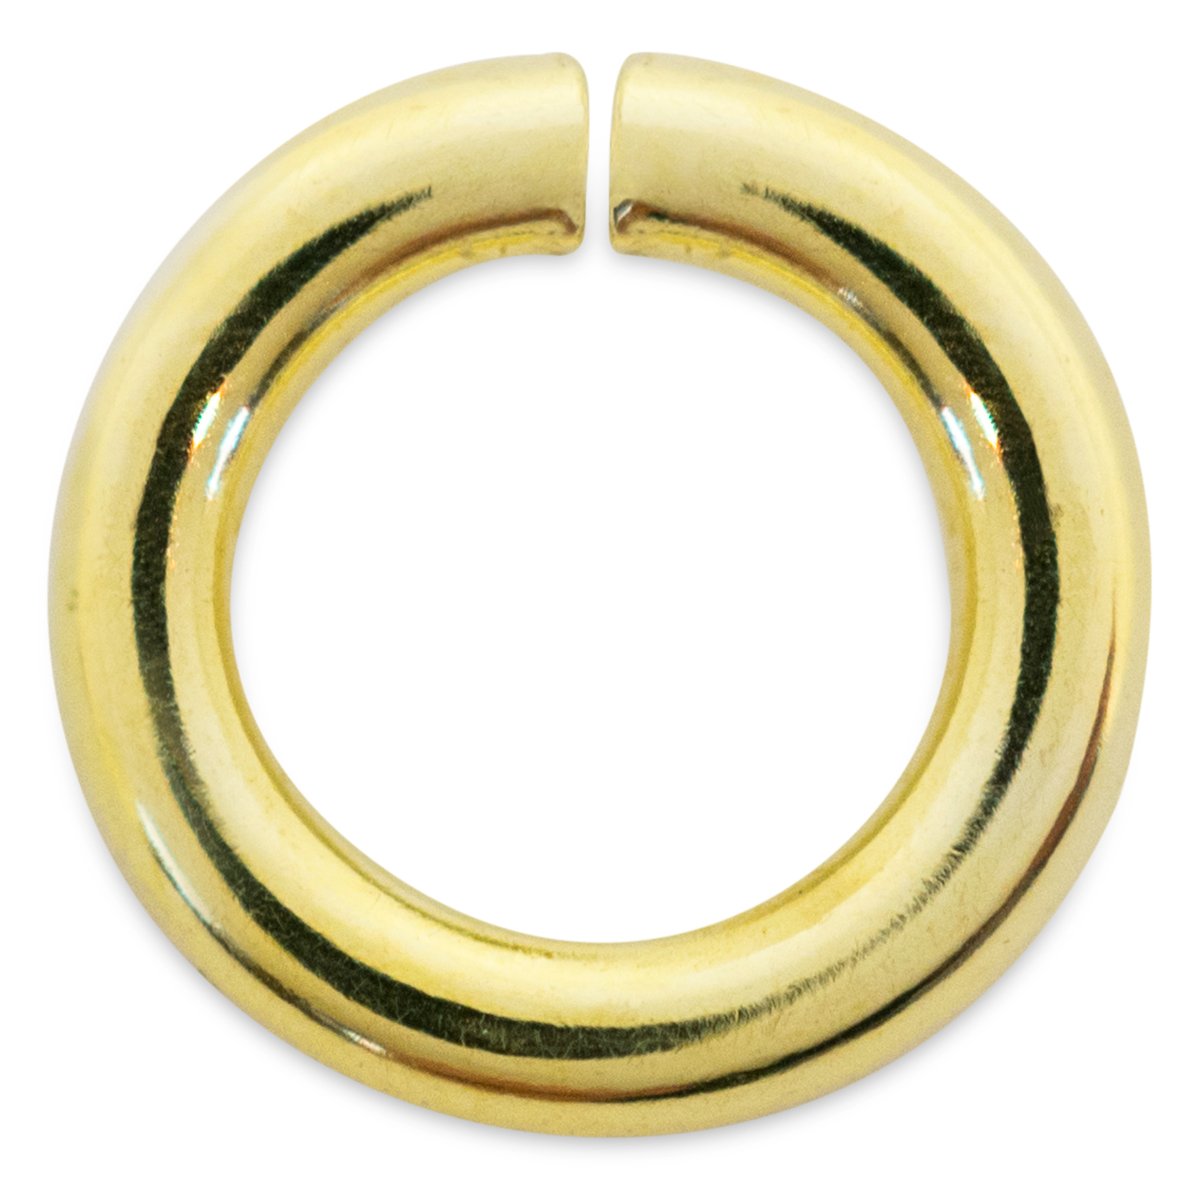 Binderinge, rund, 585/- Gelbgold, Ø 4 mm, Stärke 0,8 mm